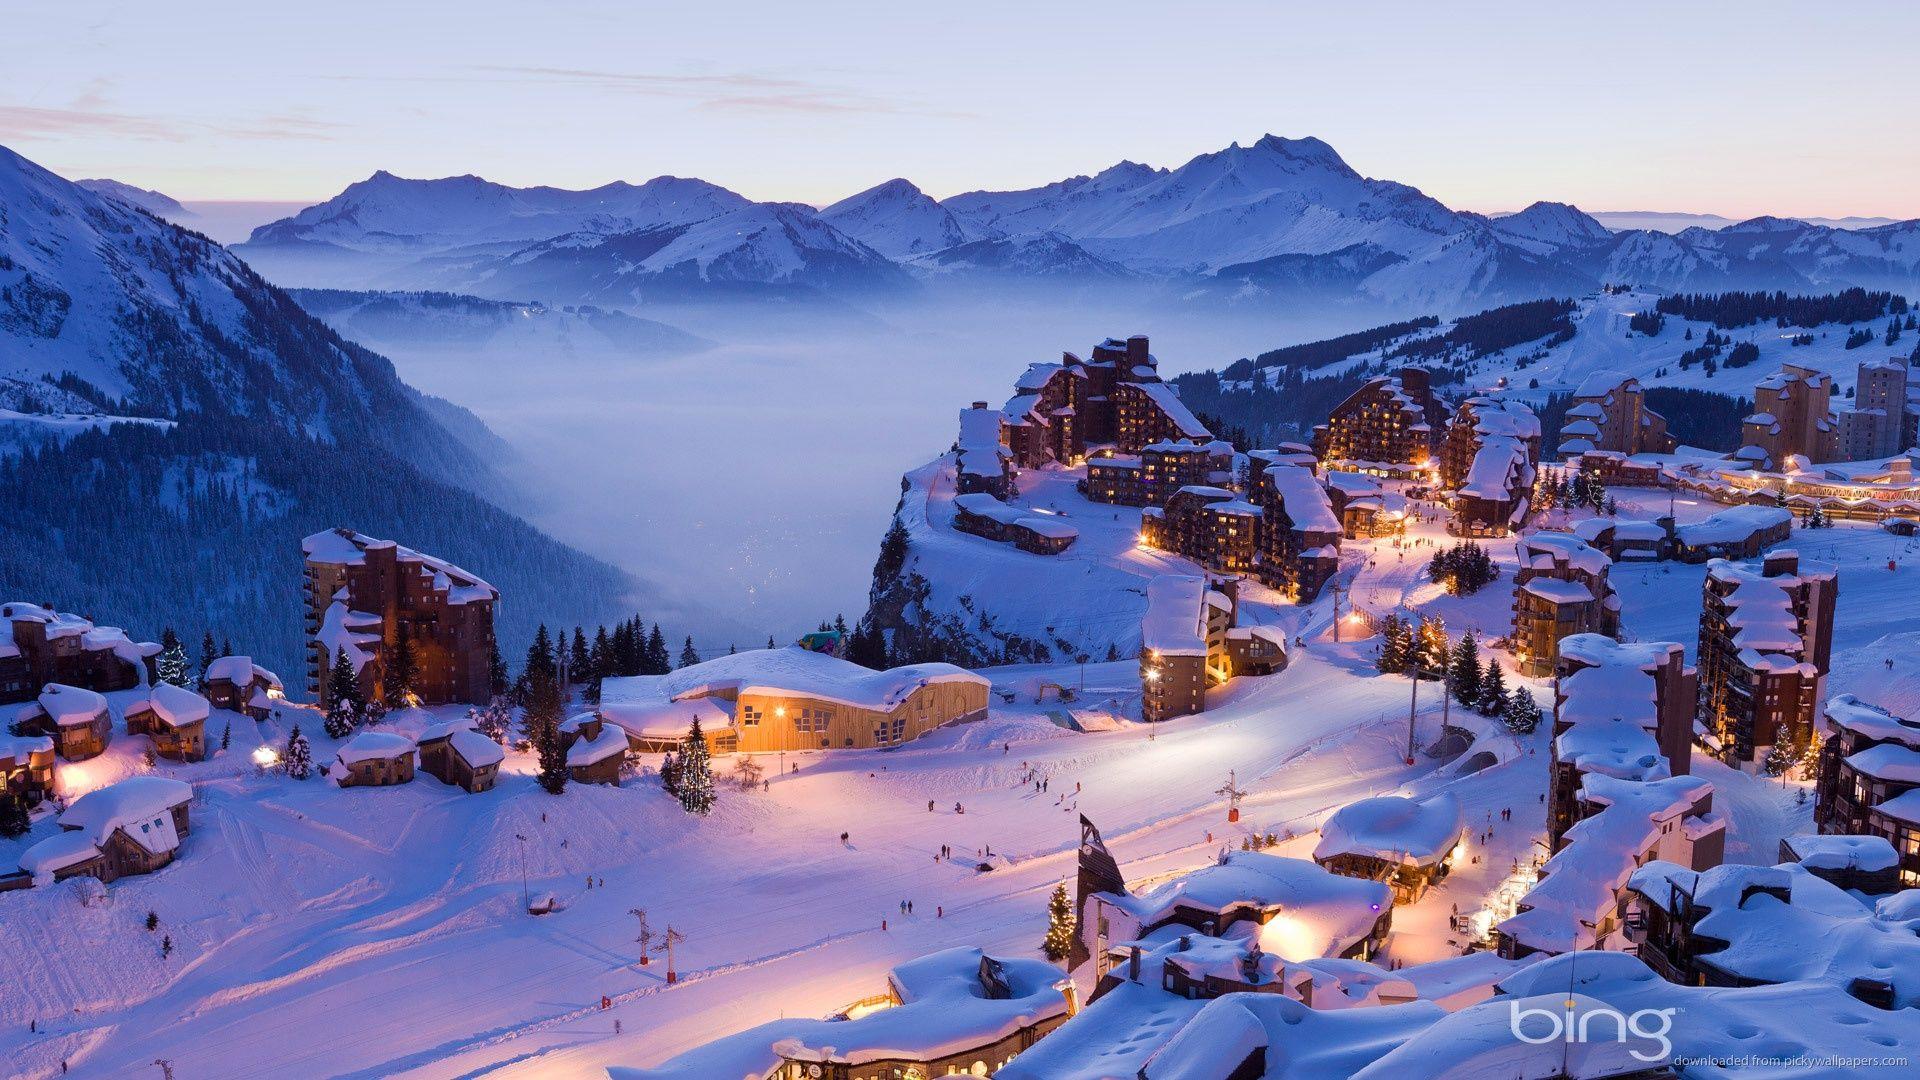 bing winter image. Bing Winter Village (1920x1080). French ski